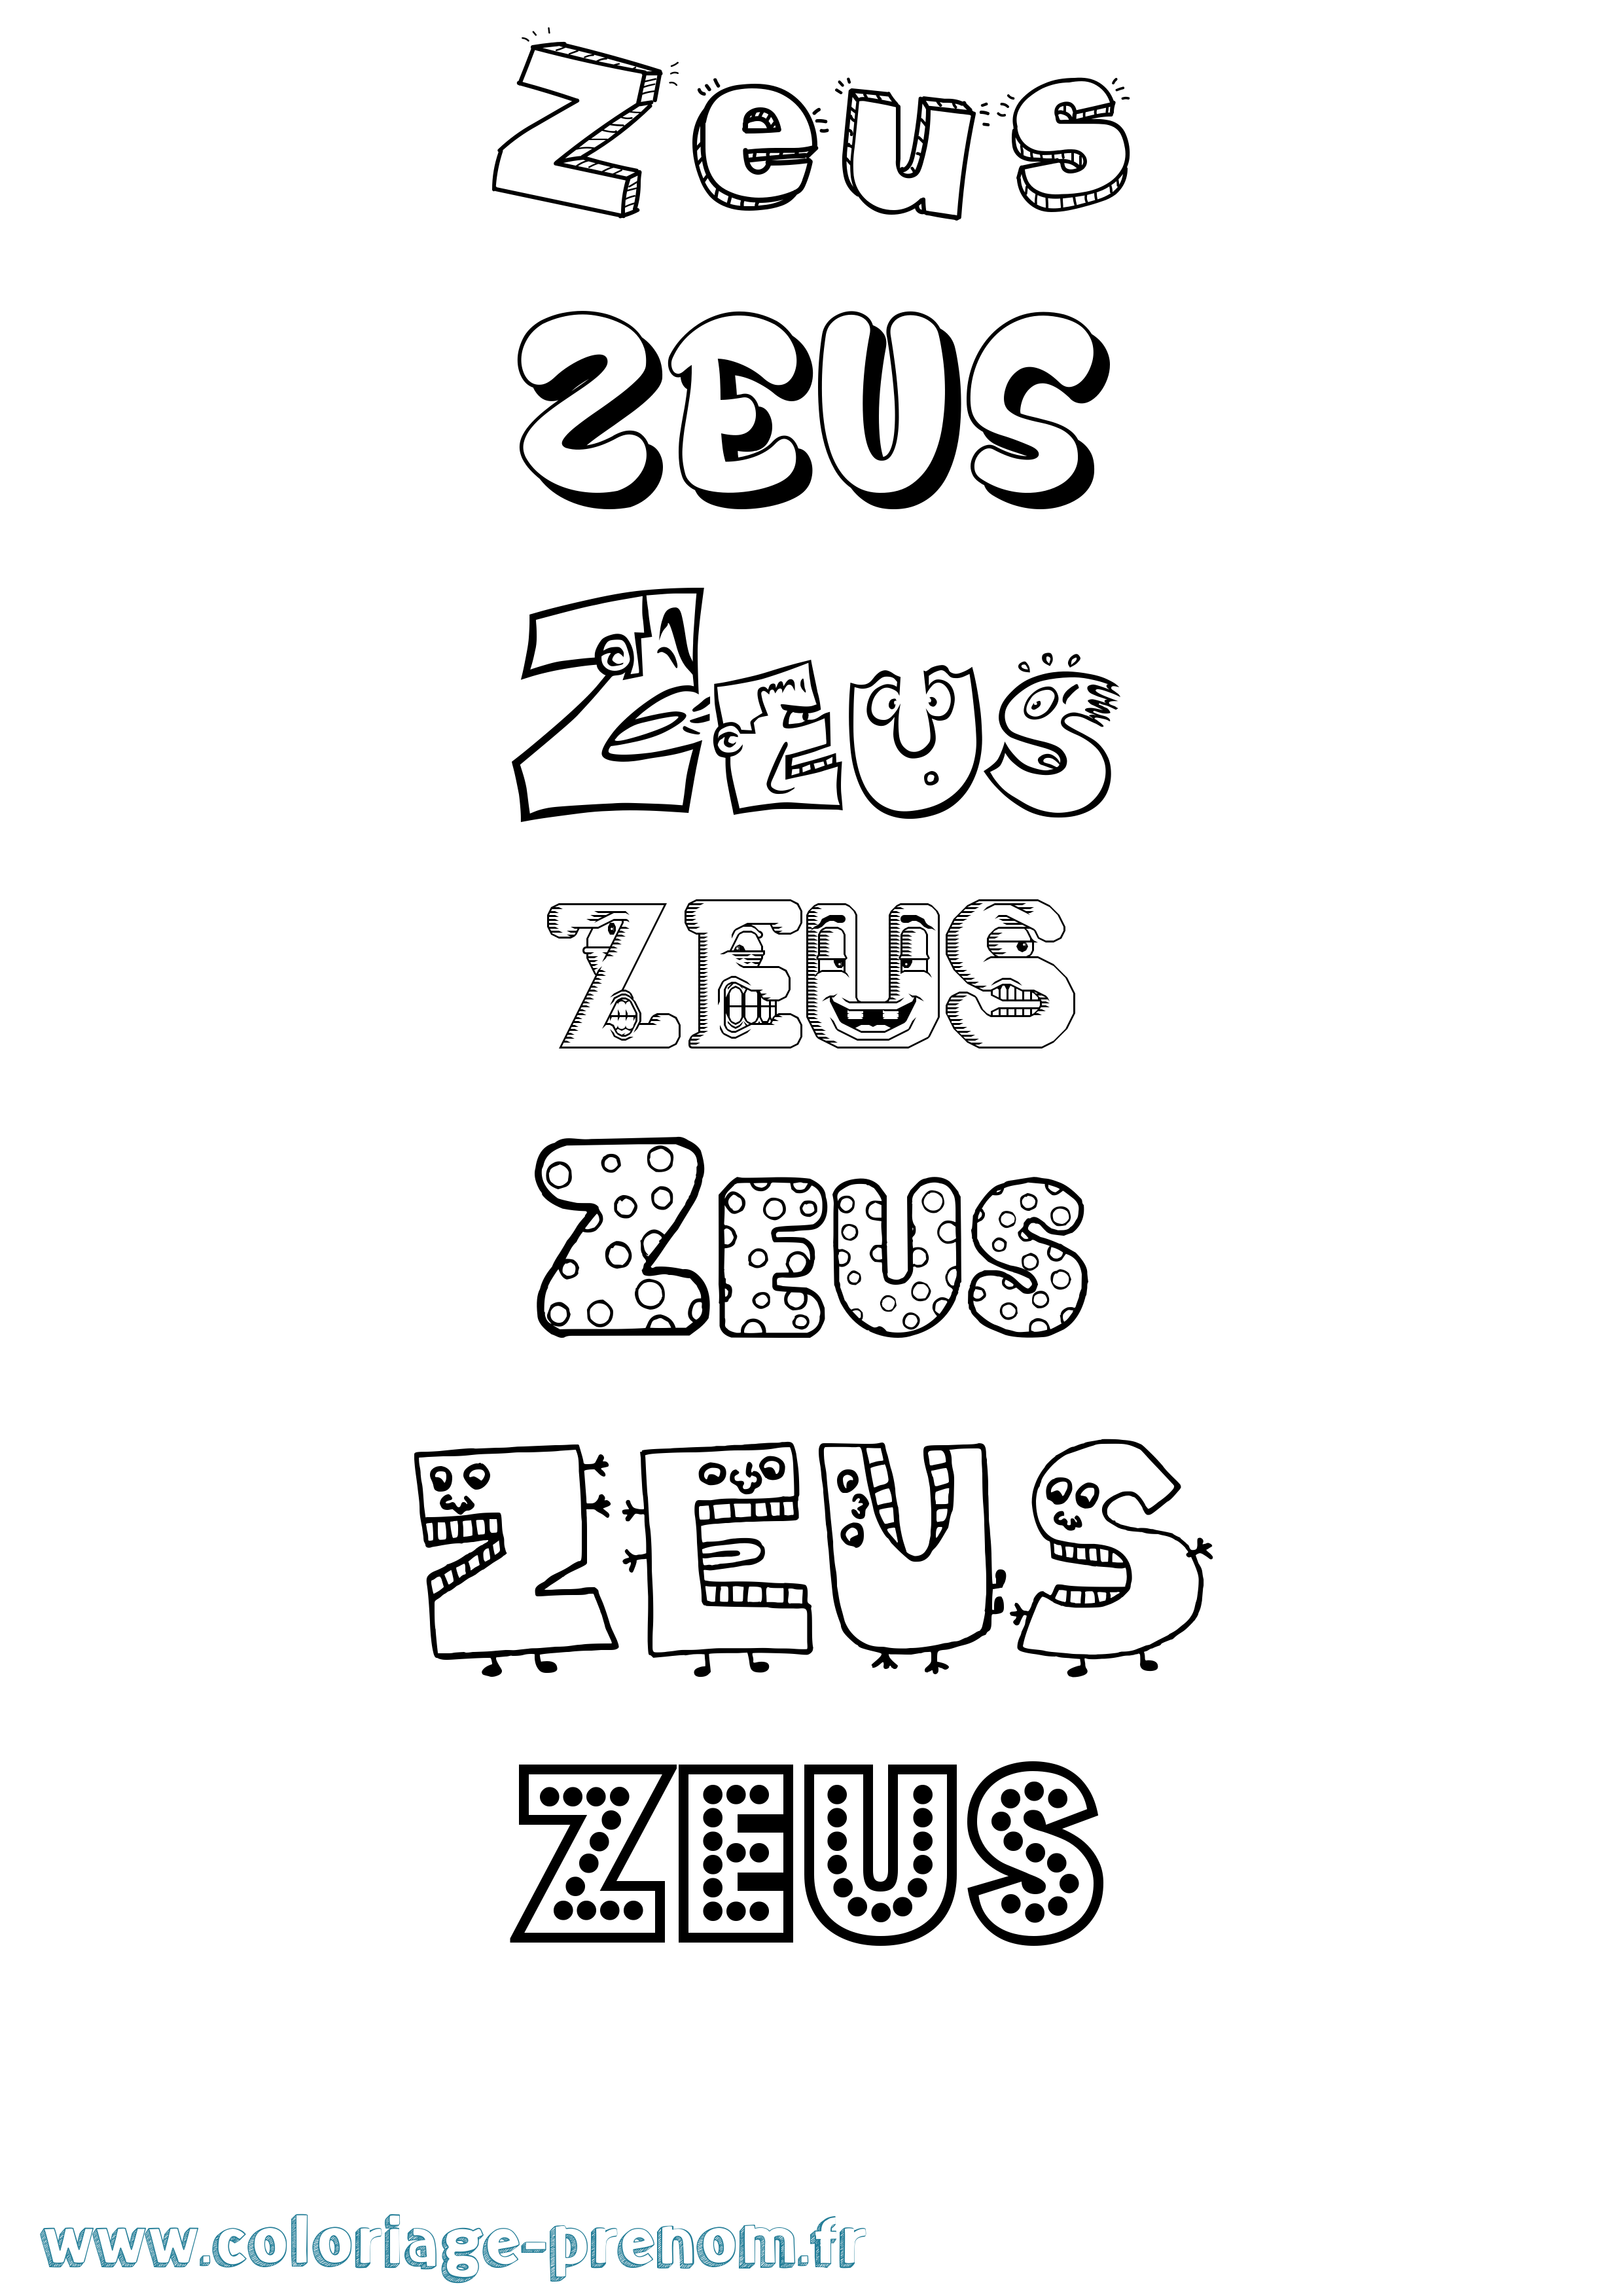 Coloriage prénom Zeus Fun